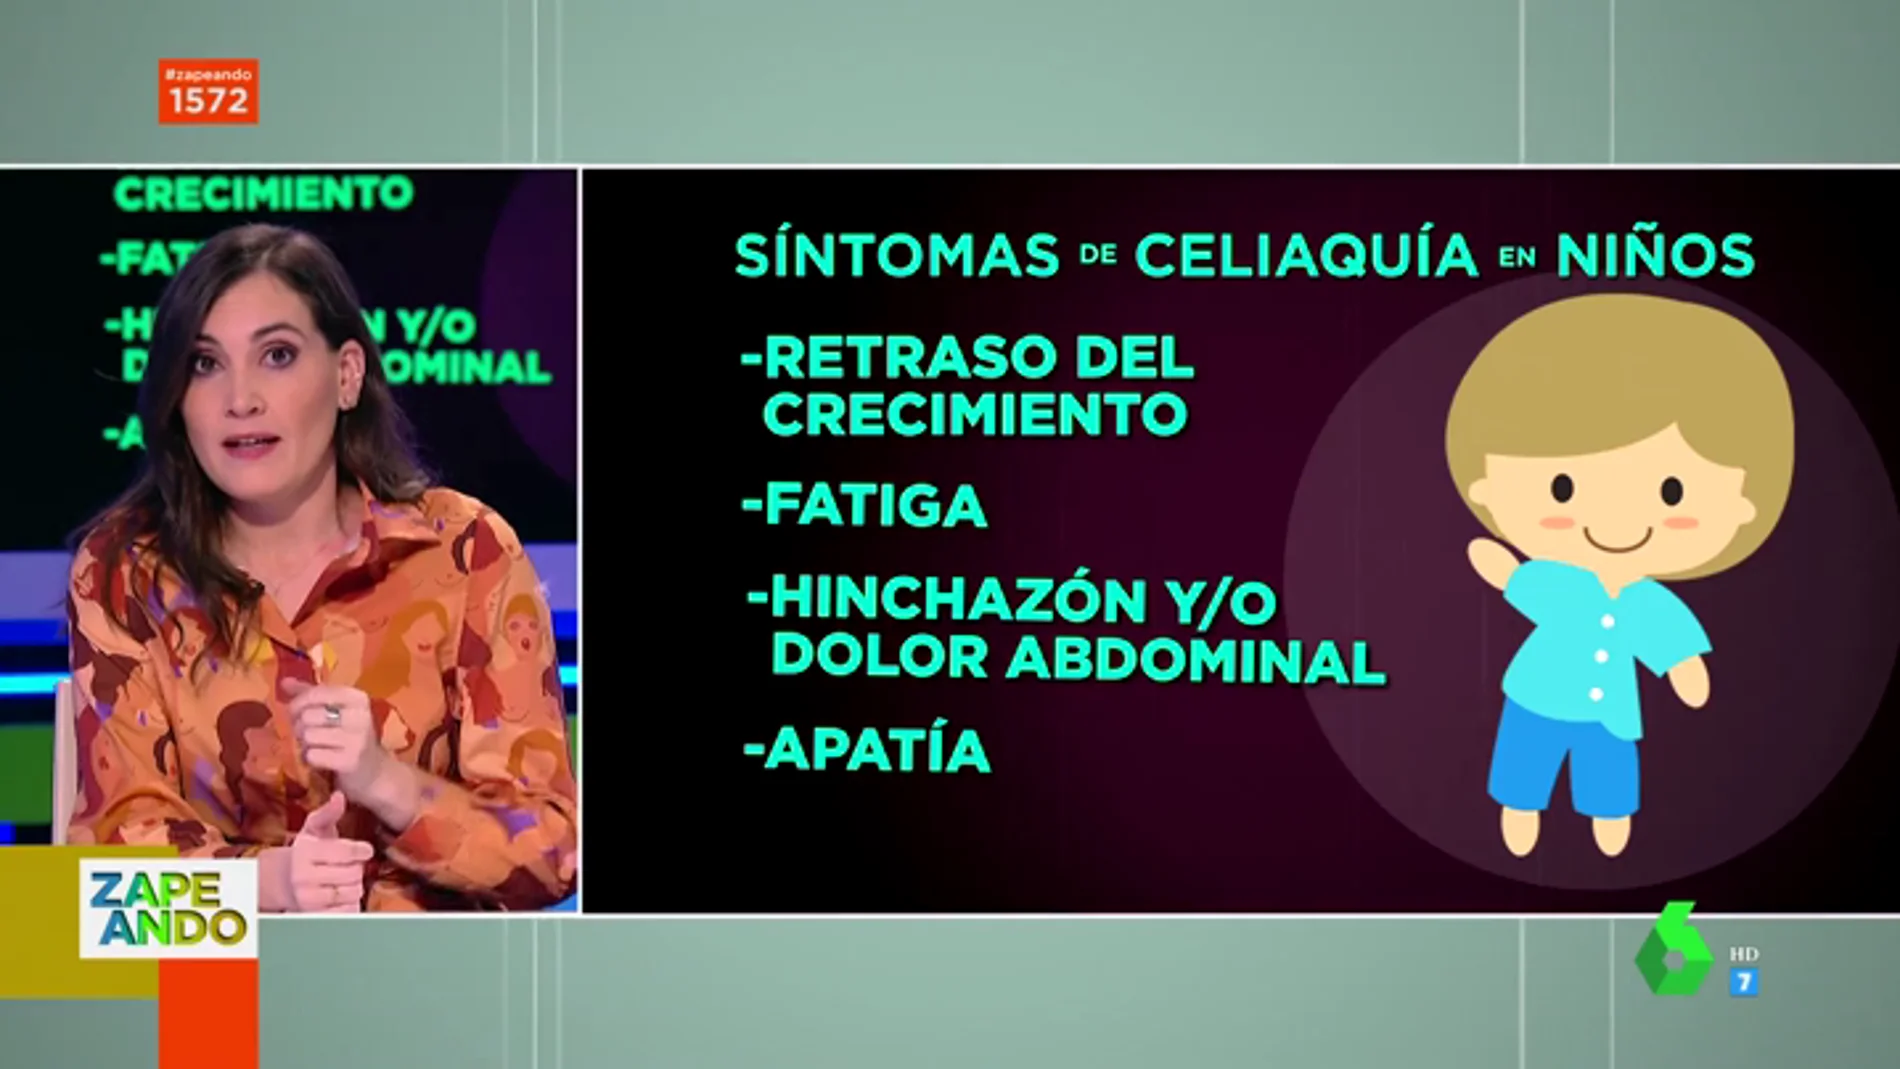 Boticaria Garcñia te explica los diferentes síntomas de la celiaquía según la edad